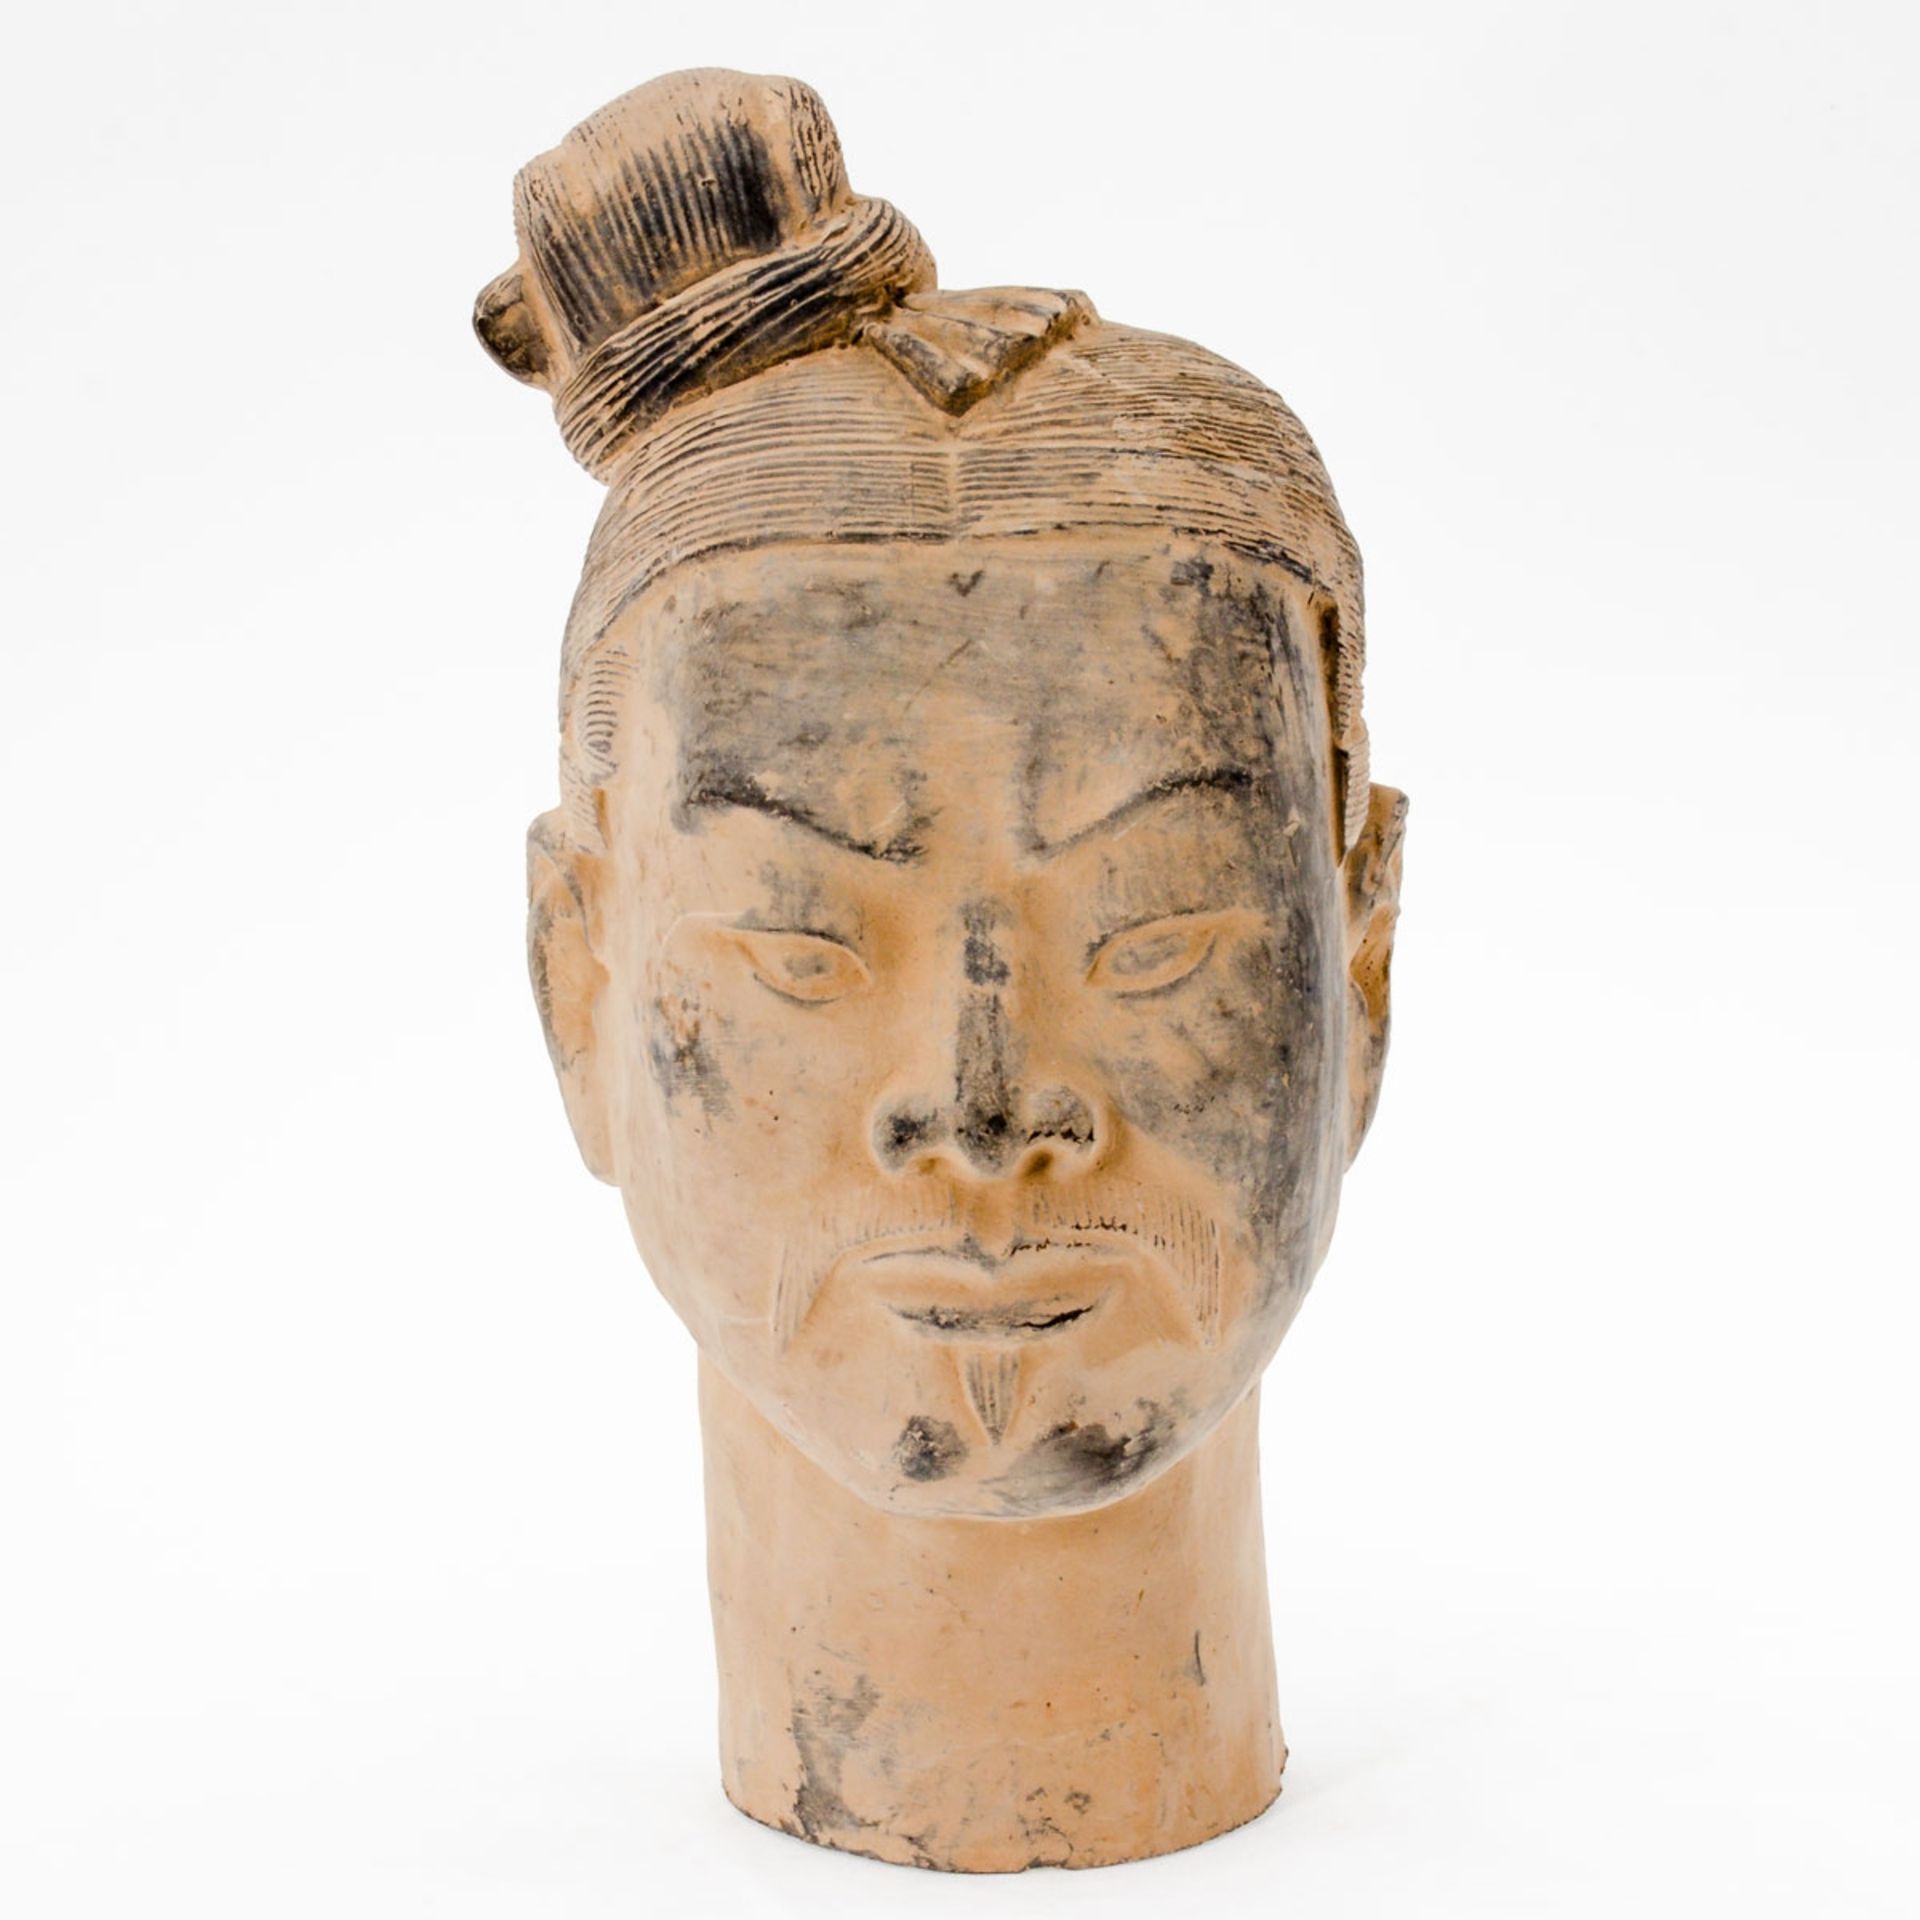 Kopf eines Kriegers China. Terrakotta. H. 29,2 cm. Darstellung der Gesichtszüge, der Ohren u